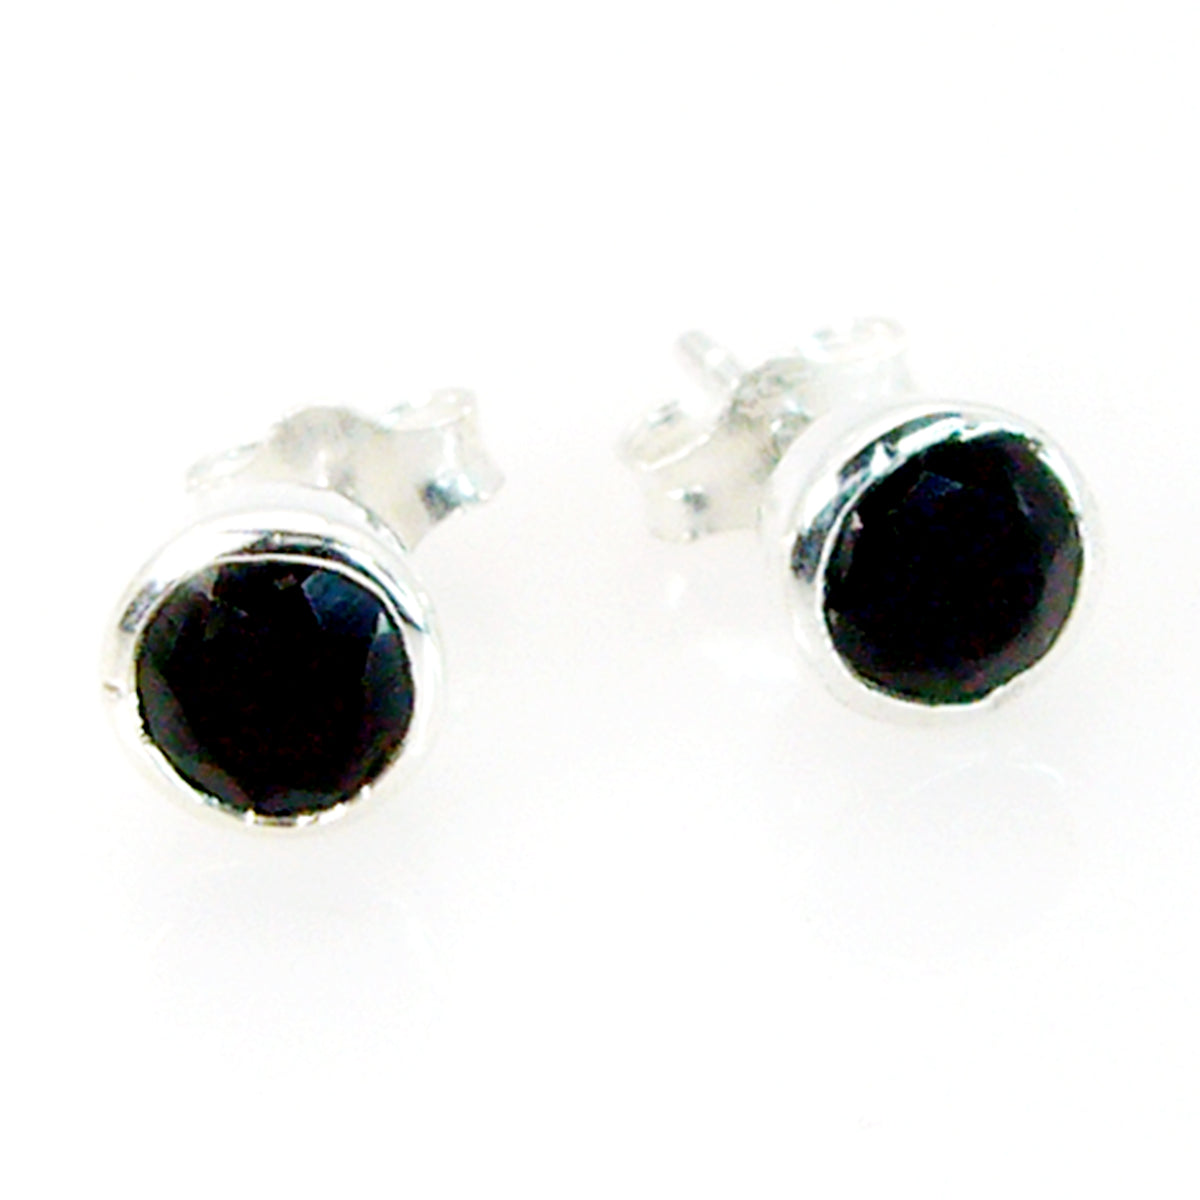 Riyo Good Gemstones round Faceted Black Onyx Silver Earrings sister gift